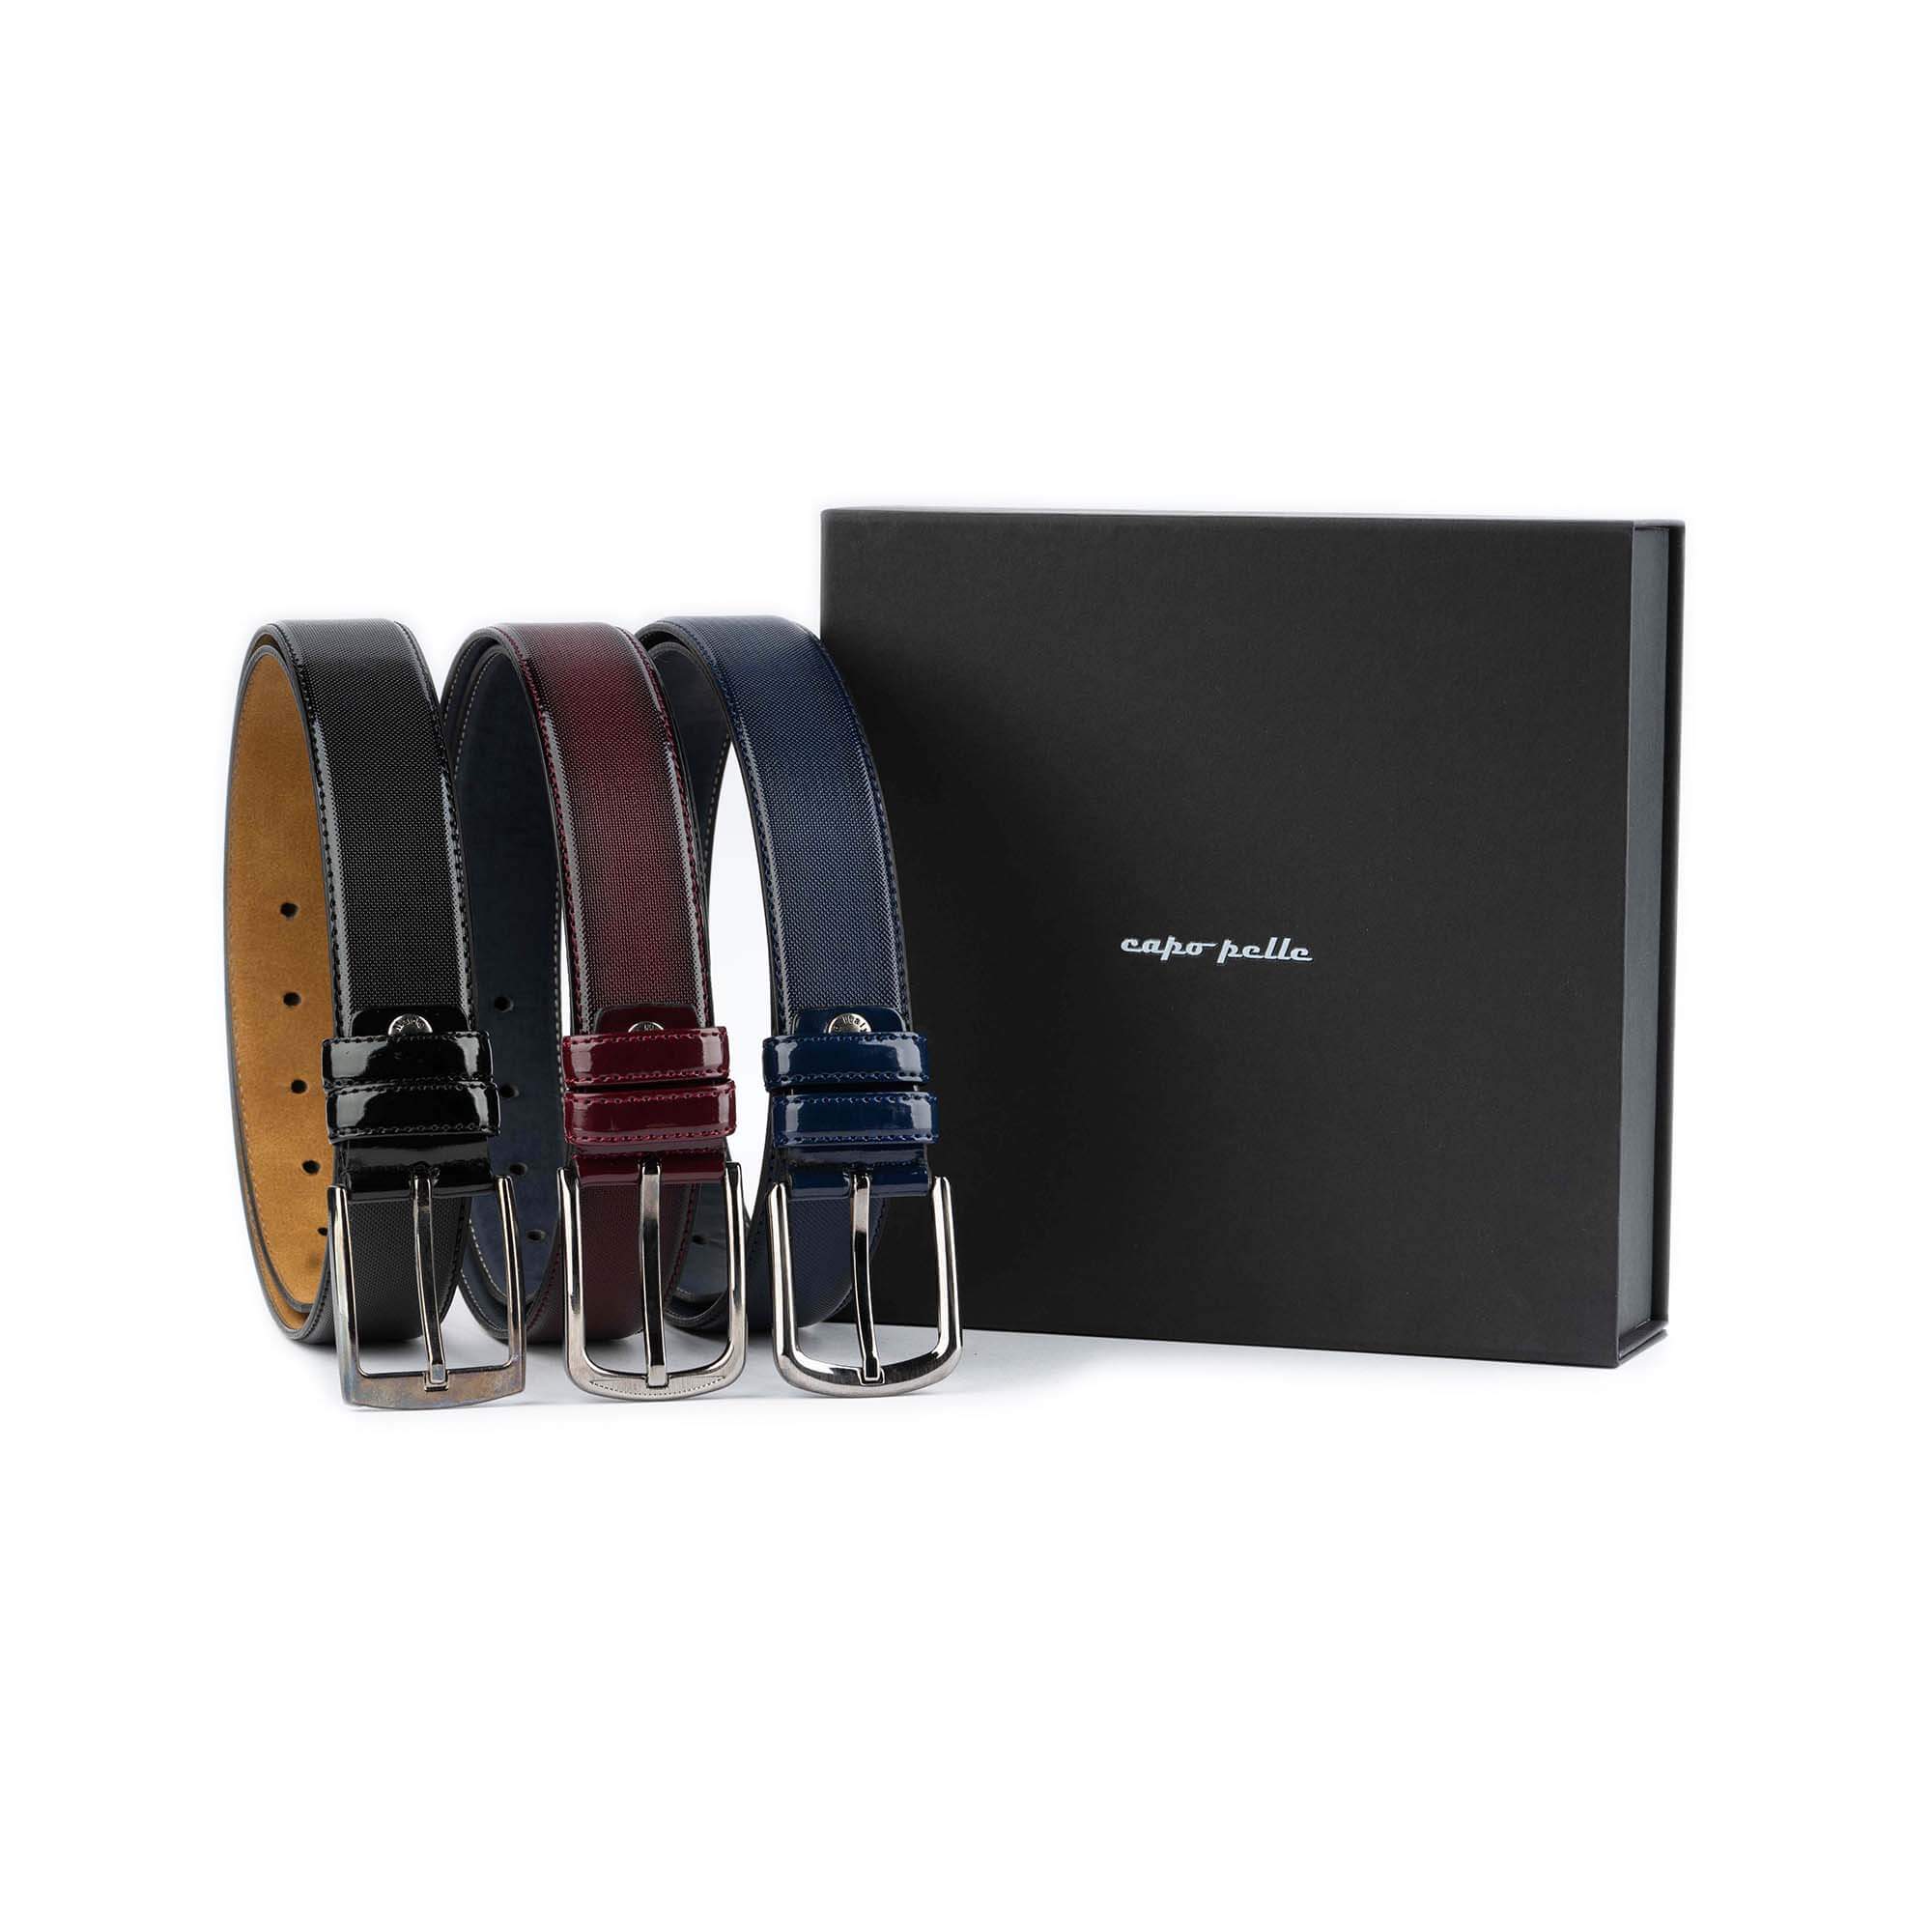 Men's Belt, Black Buckle Leather Belt For Men, Adjustable Automatic Buckle  Belt (box Included), Business Leather Belt, Holiday Gifts Men Gift Idea